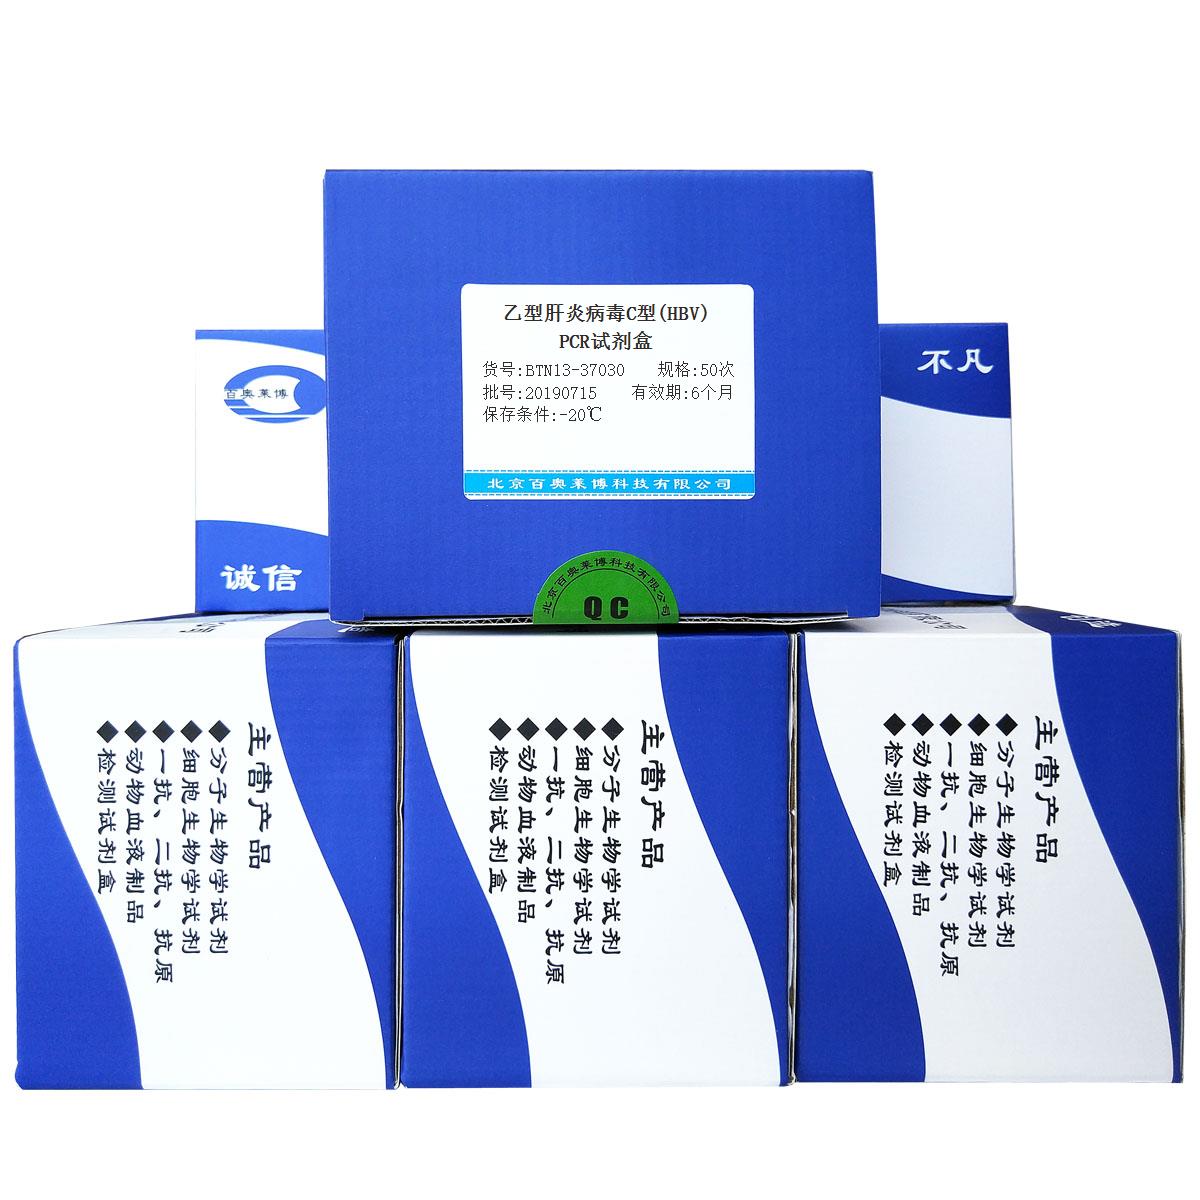 乙型肝炎病毒C型(HBV)PCR试剂盒北京价格